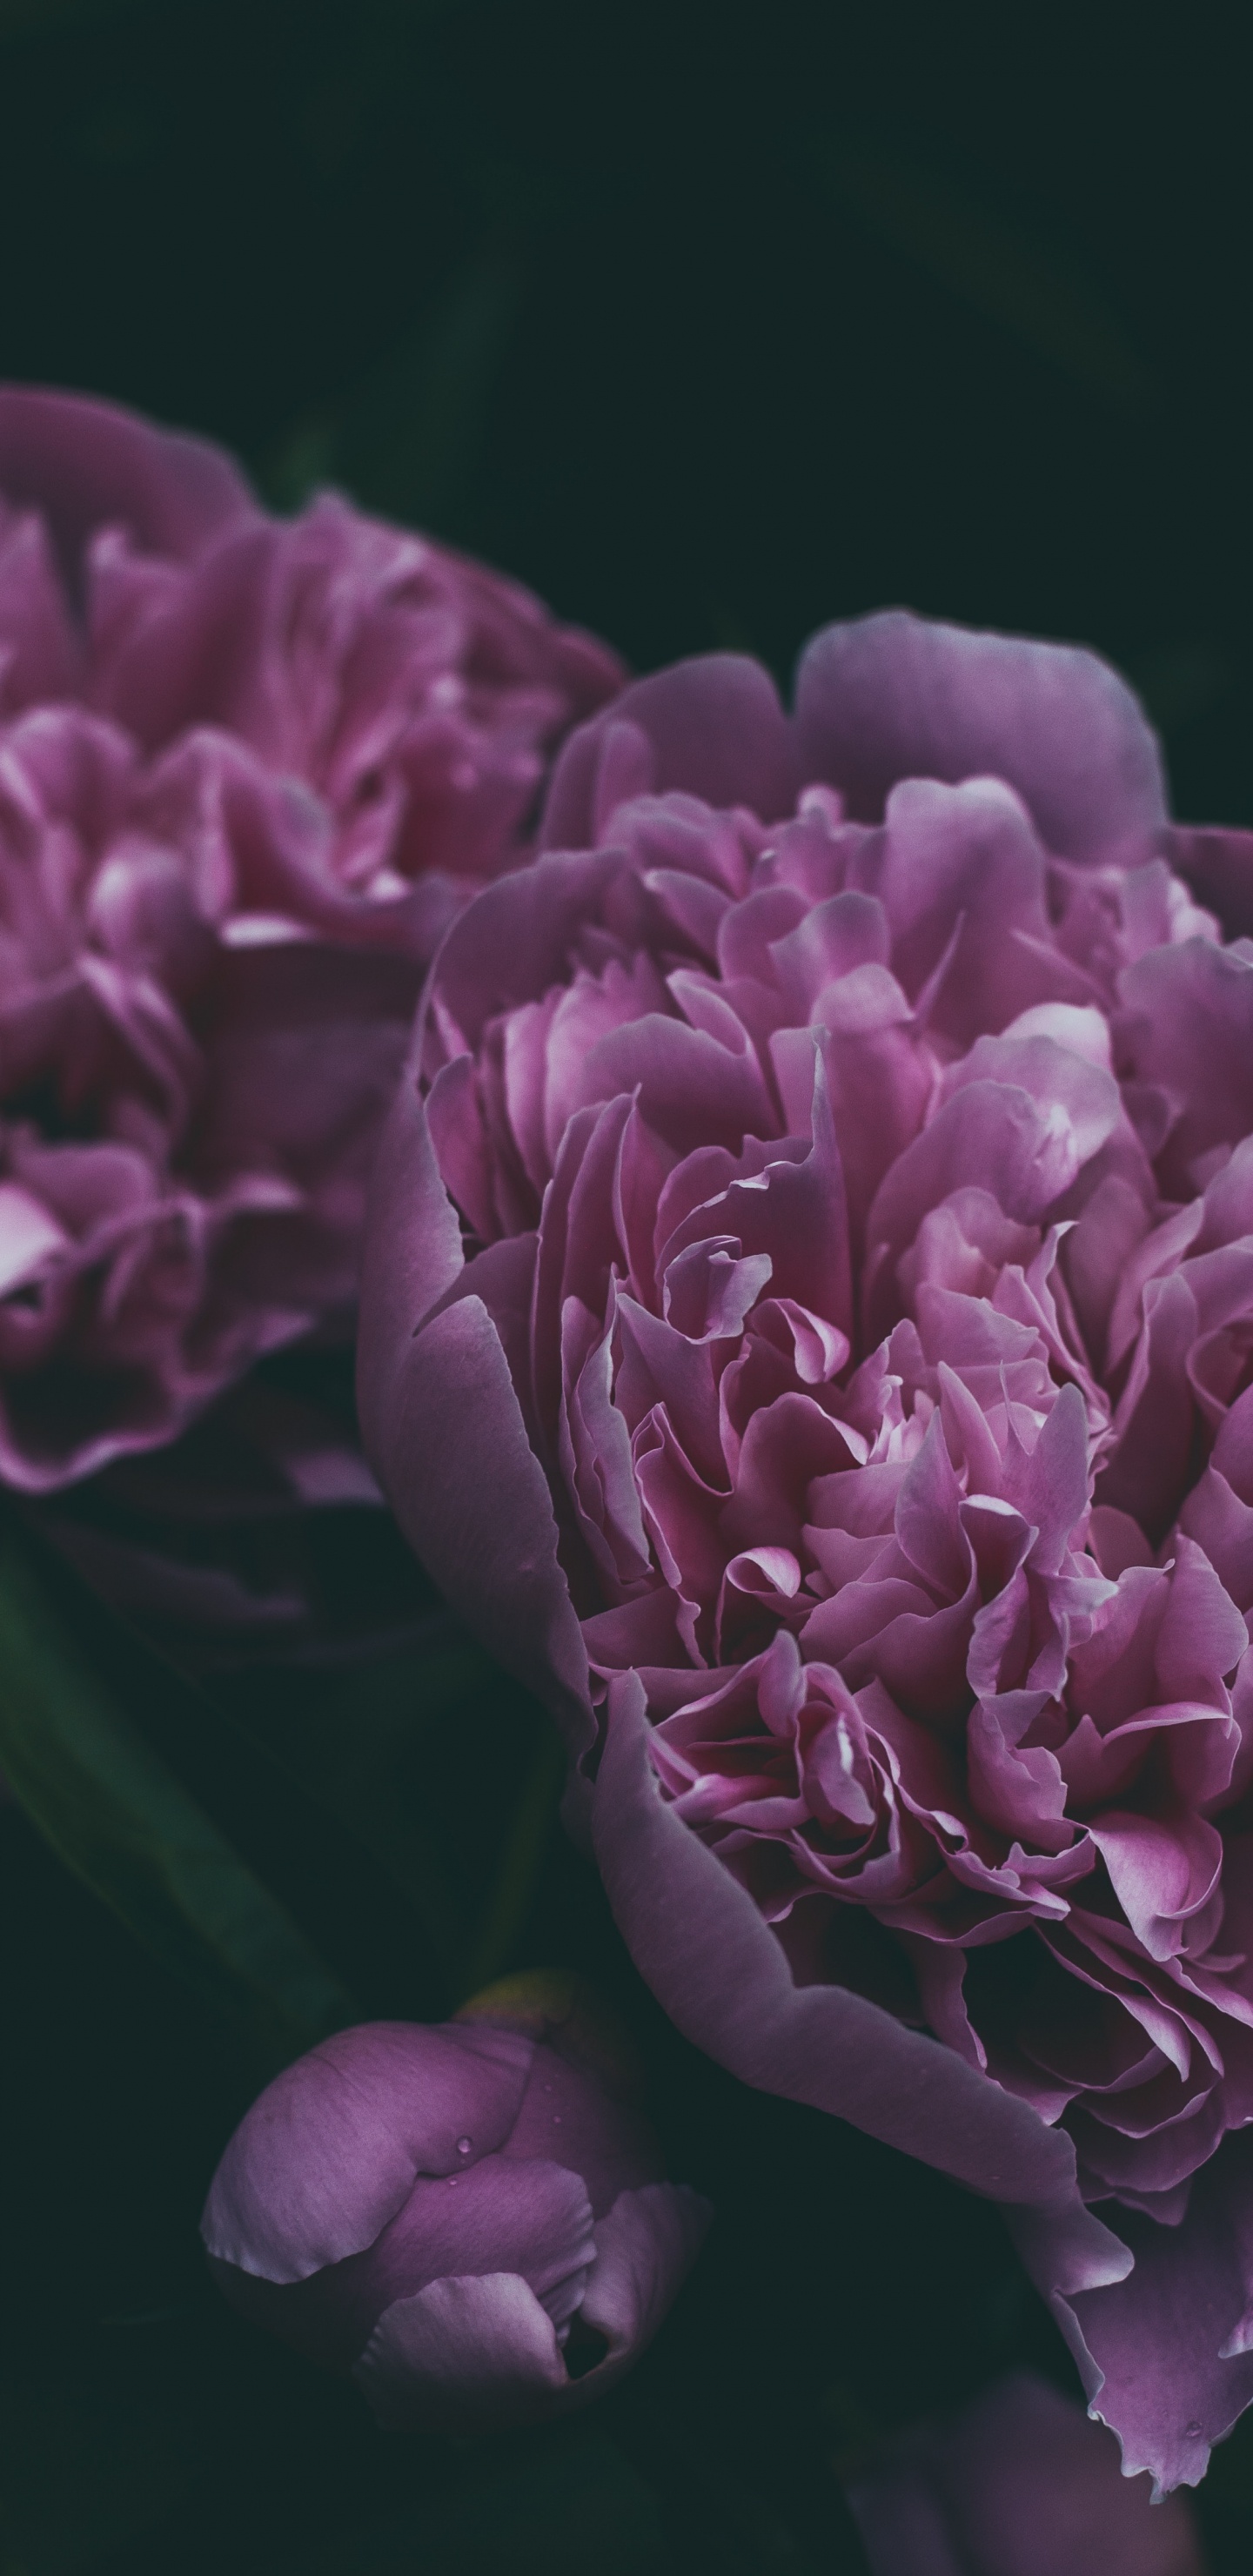 牡丹, 显花植物, 紫罗兰色, 紫色的, 粉红色 壁纸 1440x2960 允许